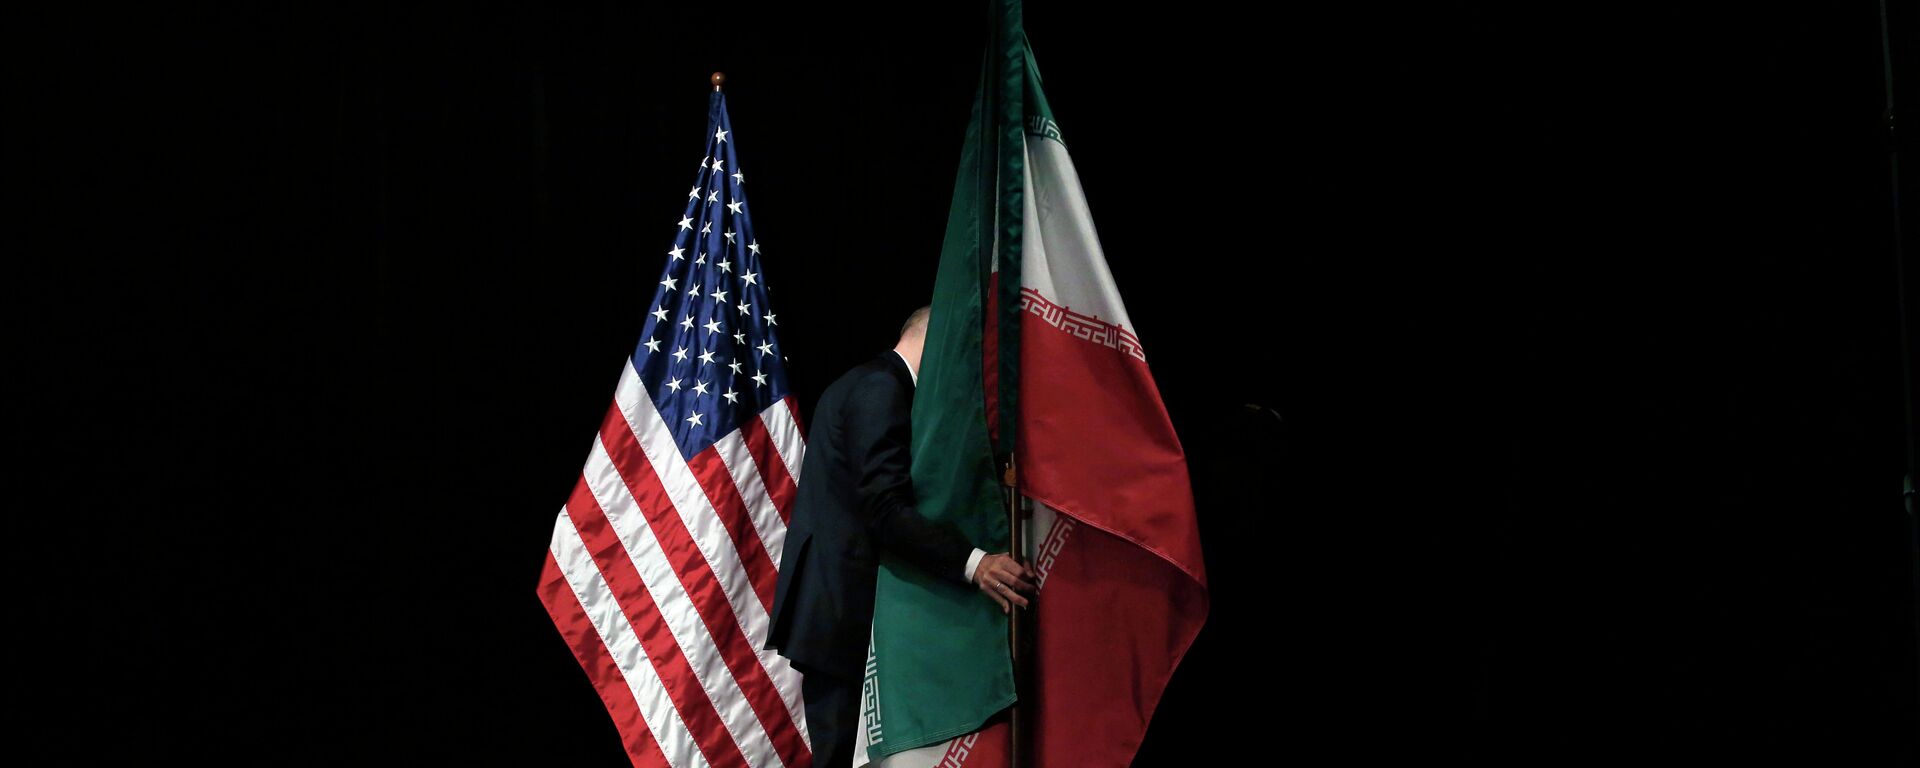 Banderas de EEUU e Irán - Sputnik Mundo, 1920, 04.02.2021